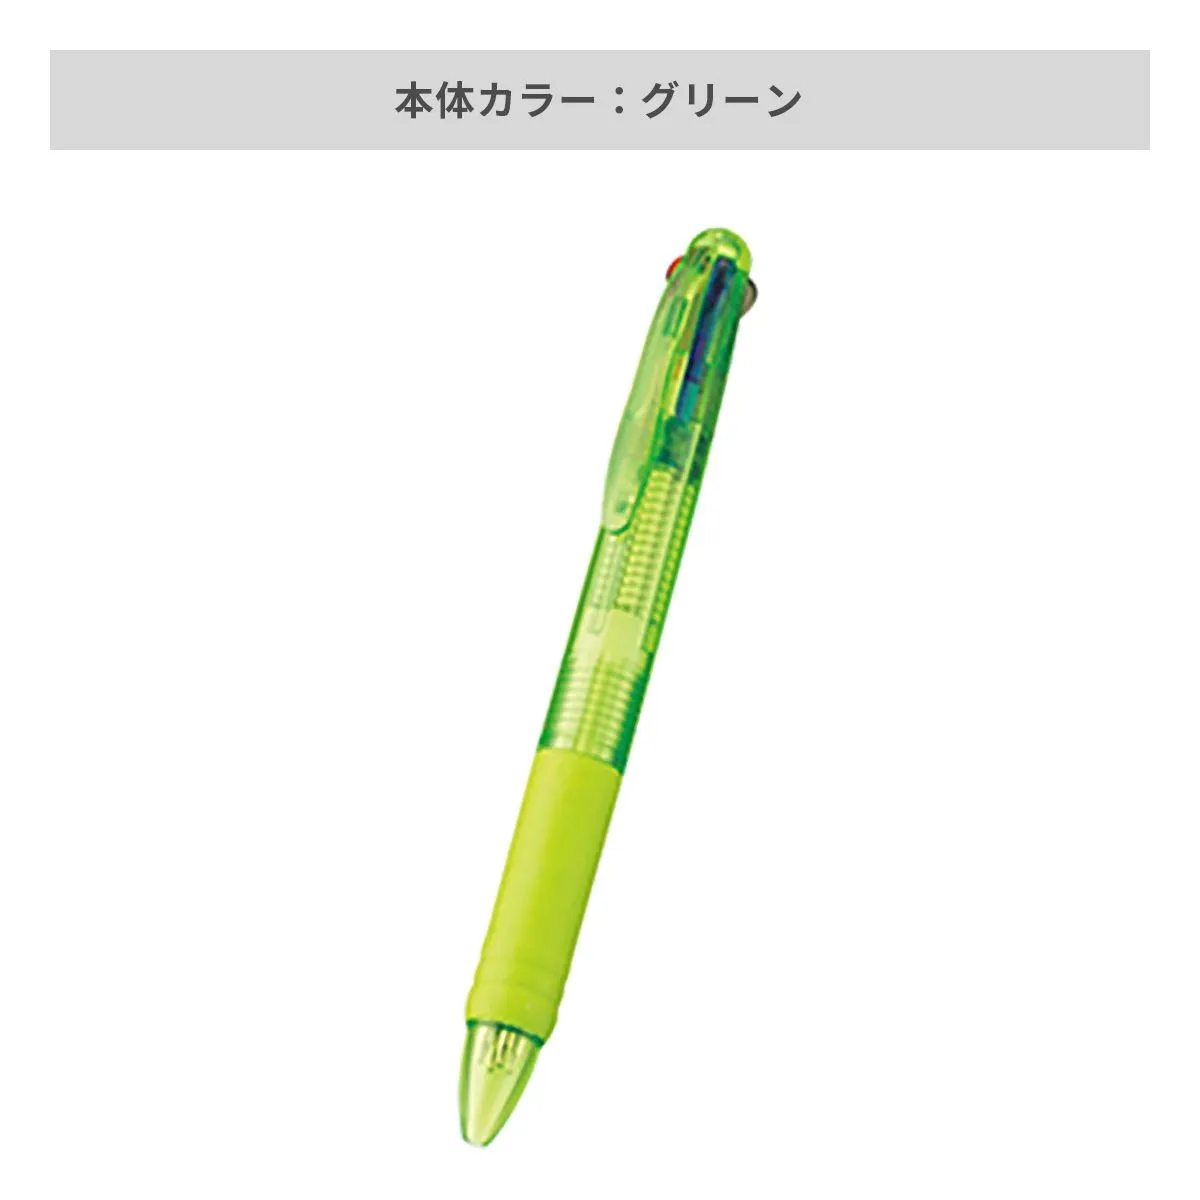 3色 プラスワン ボールペン【名入れボールペン / インクジェット印刷】 画像5